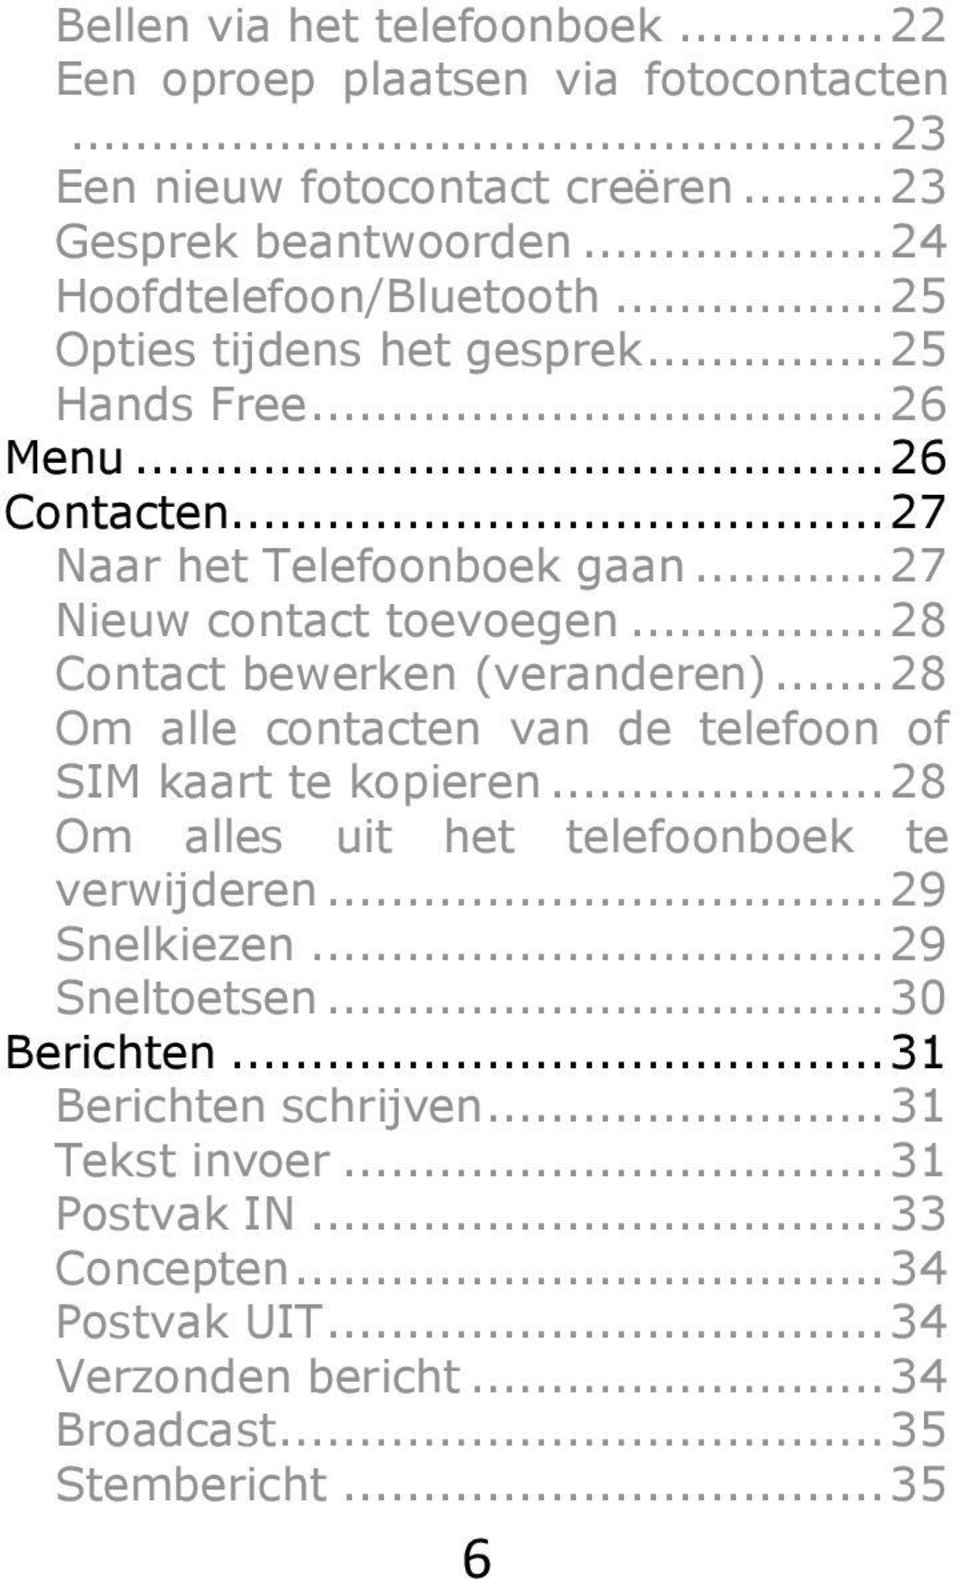 .. 28 Contact bewerken (veranderen)... 28 Om alle contacten van de telefoon of SIM kaart te kopieren... 28 Om alles uit het telefoonboek te verwijderen... 29 Snelkiezen.